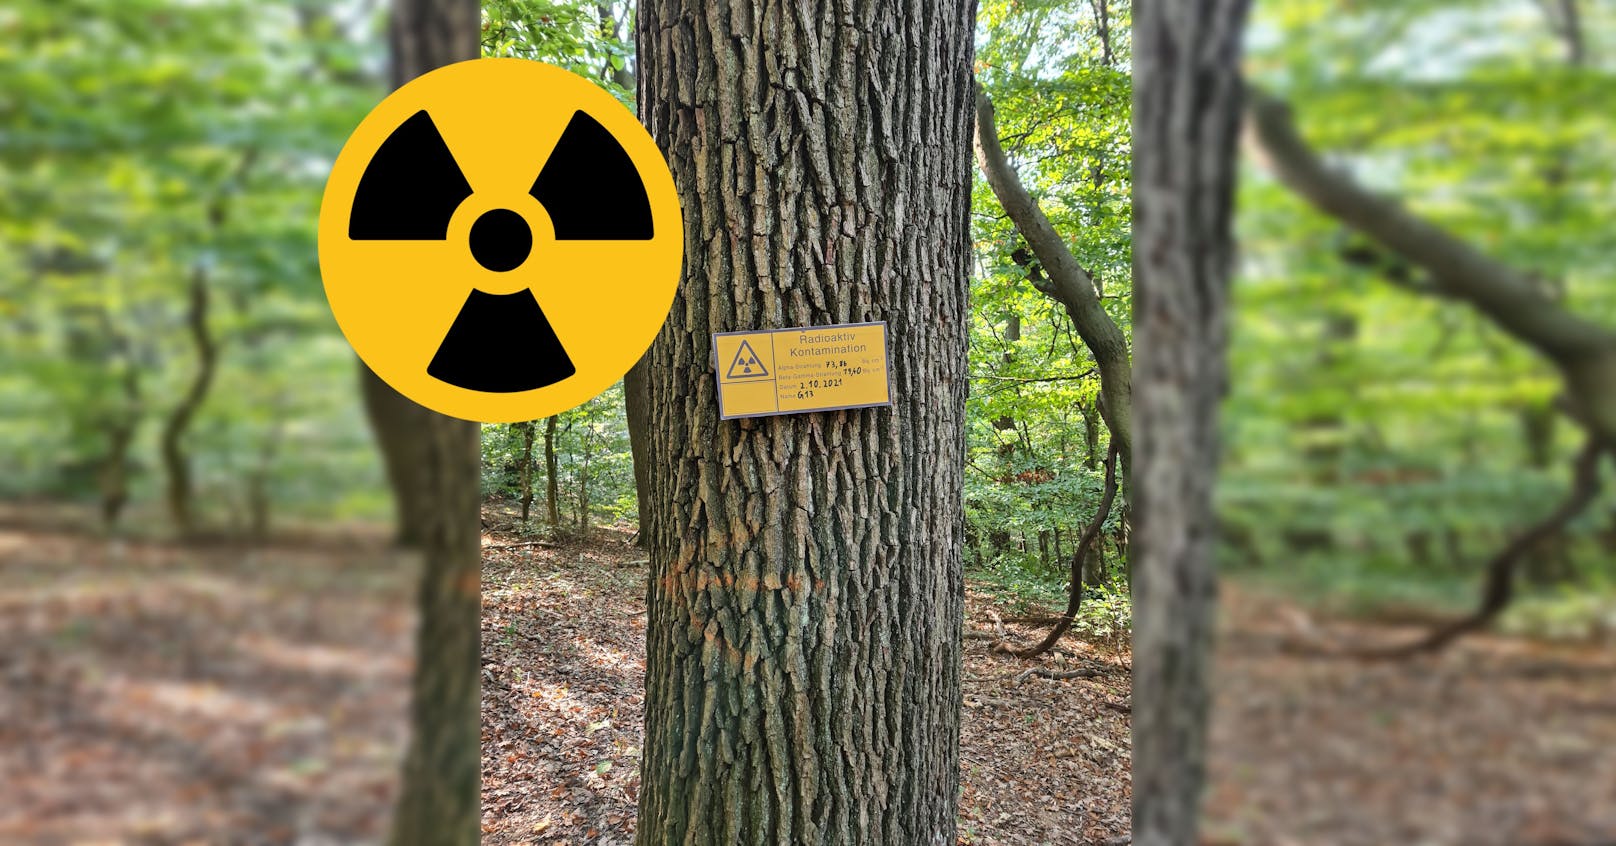 Dieser Baum soll als radioaktiv eingestuft sein.